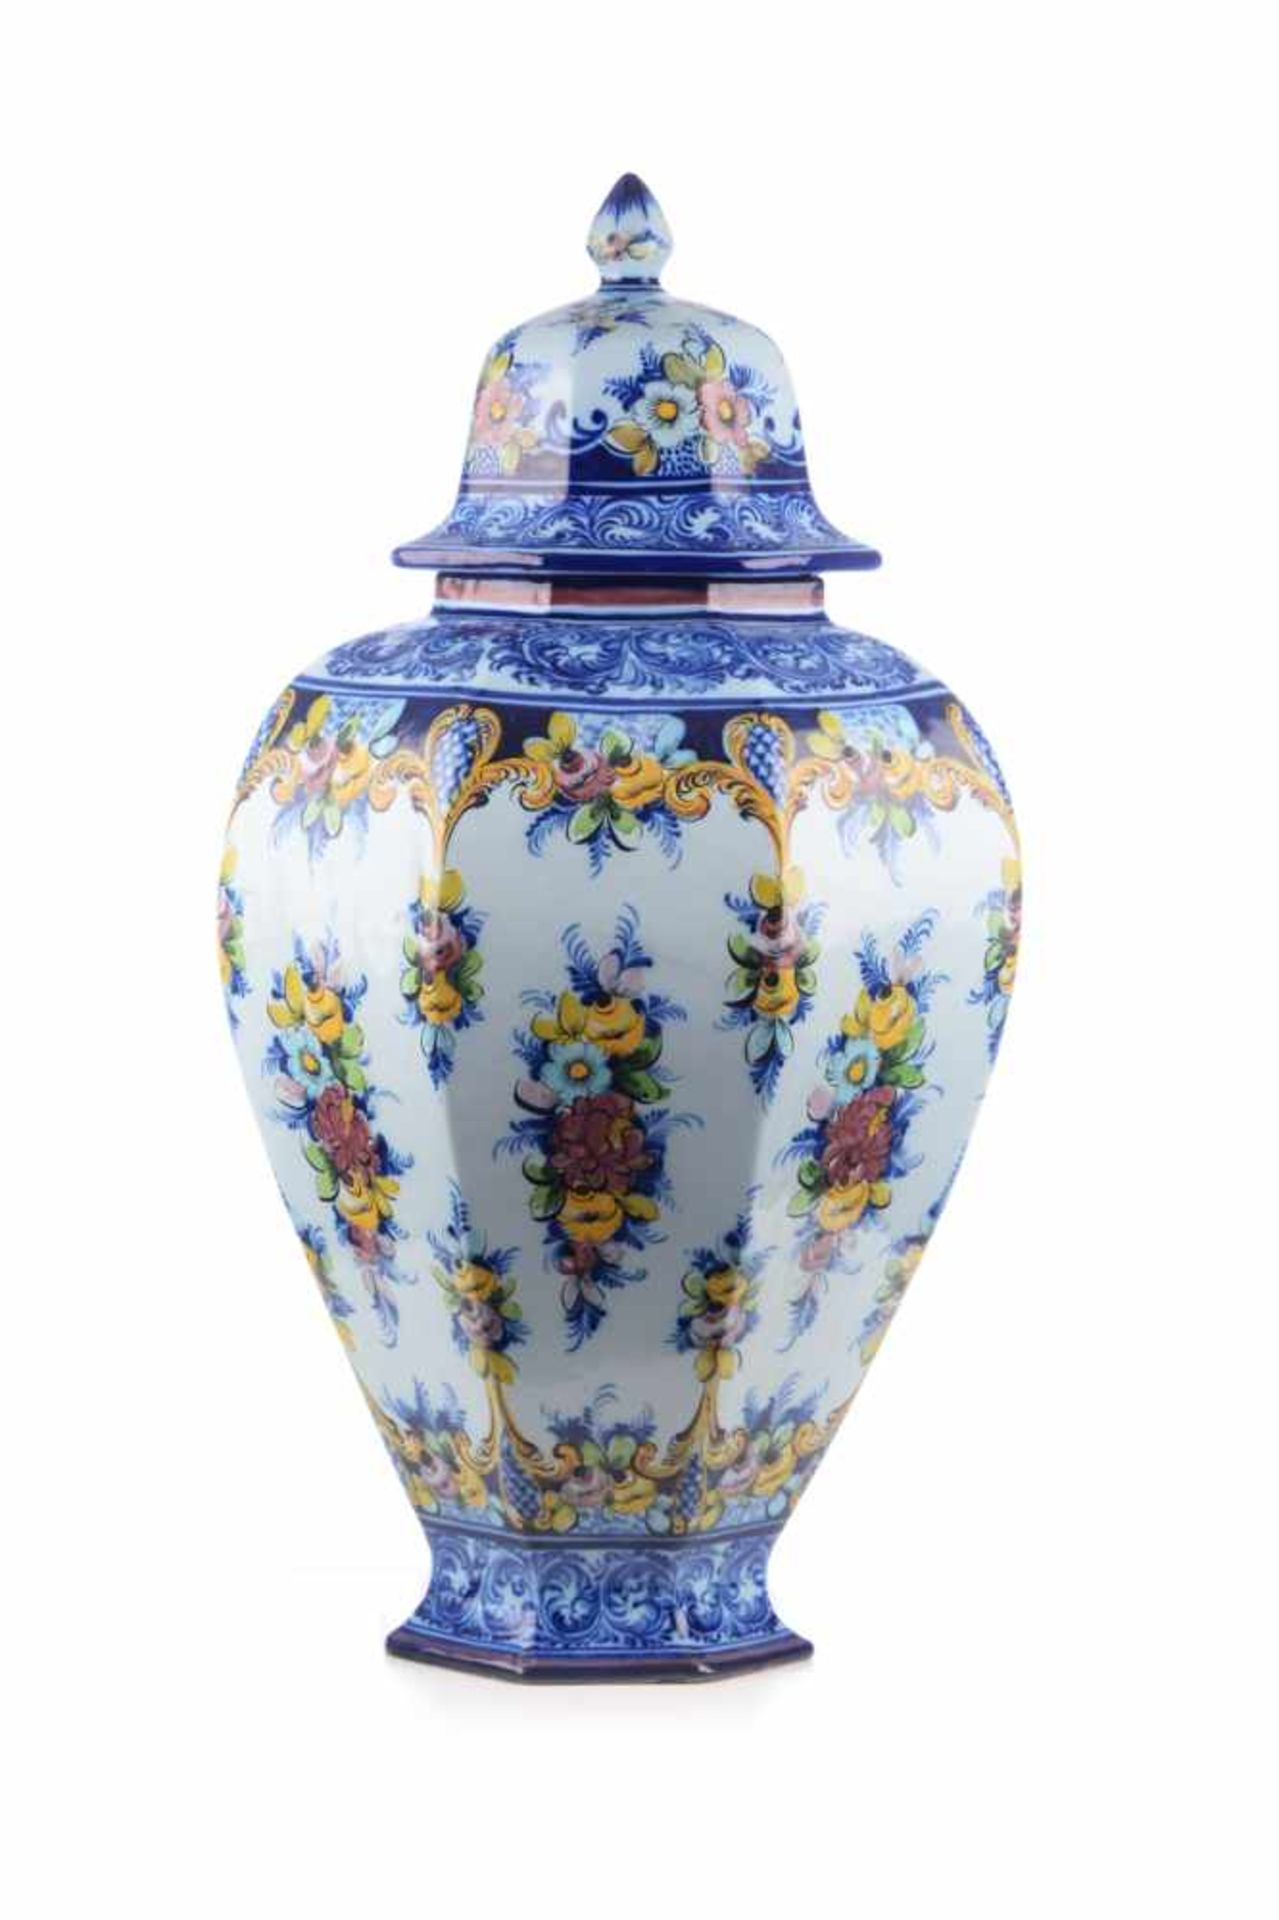 Keramik-Bodenvase, wohl Portugal.Große facettierte Vase mit floraler Malerei, Unterglasur. Datierung